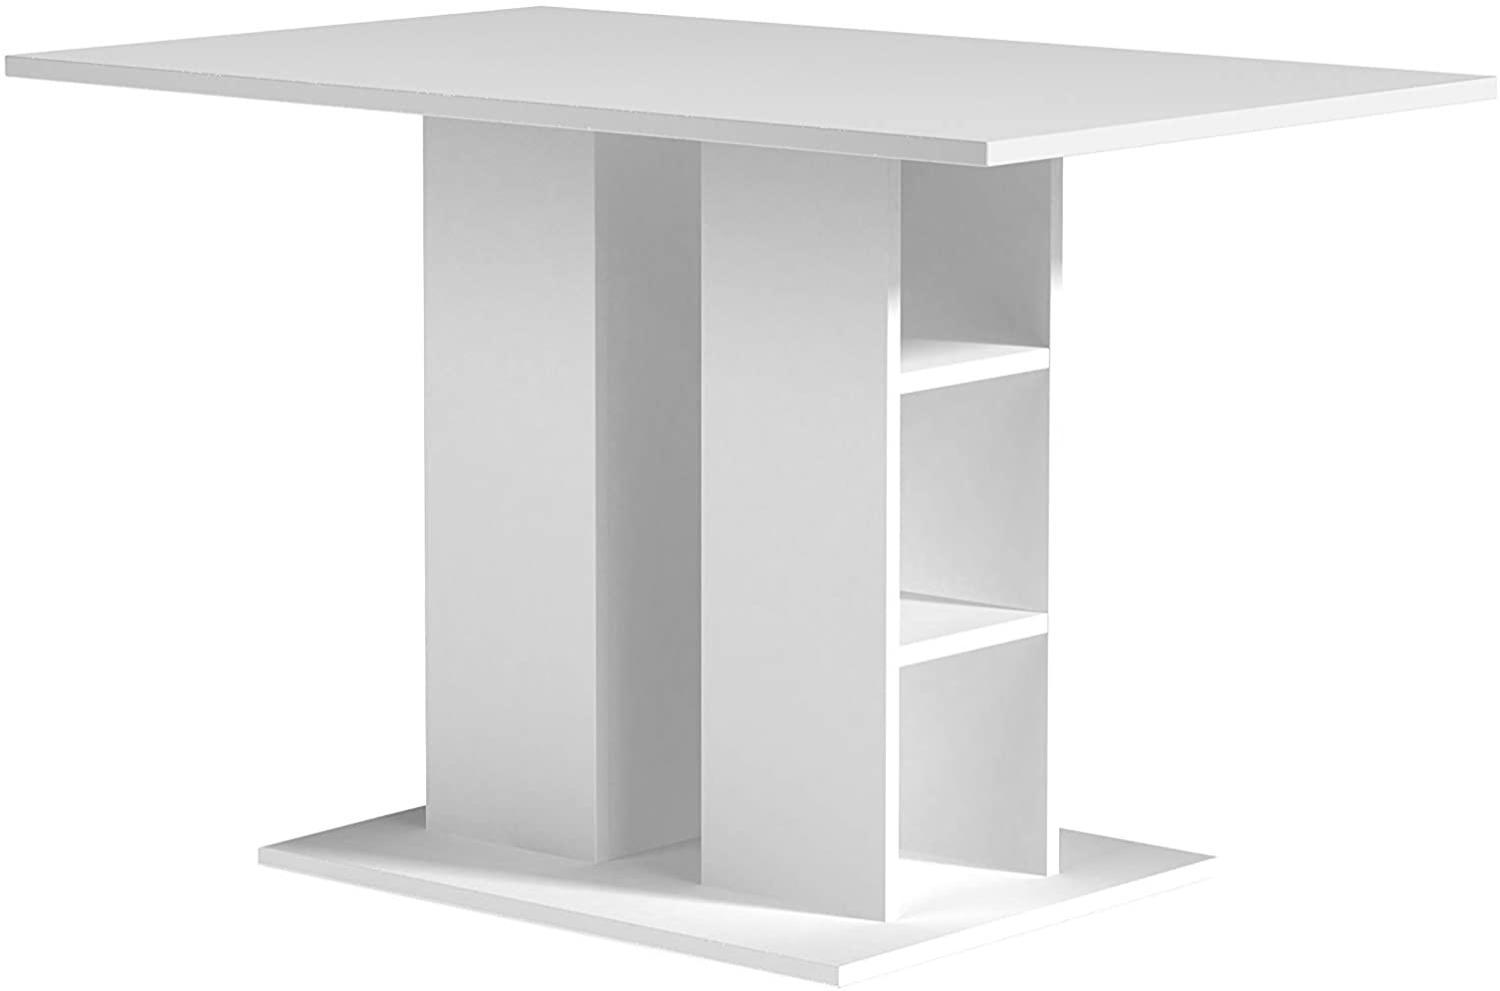 byLIVING Mattis Säulentisch mit robuster und pflegeleichter Melamin Oberfläche in weiß. Für mehr Stauraum sind Fächer in der Säule eingebaut, Holzwerkstoff, 70 x 110, H 75 cm Bild 1